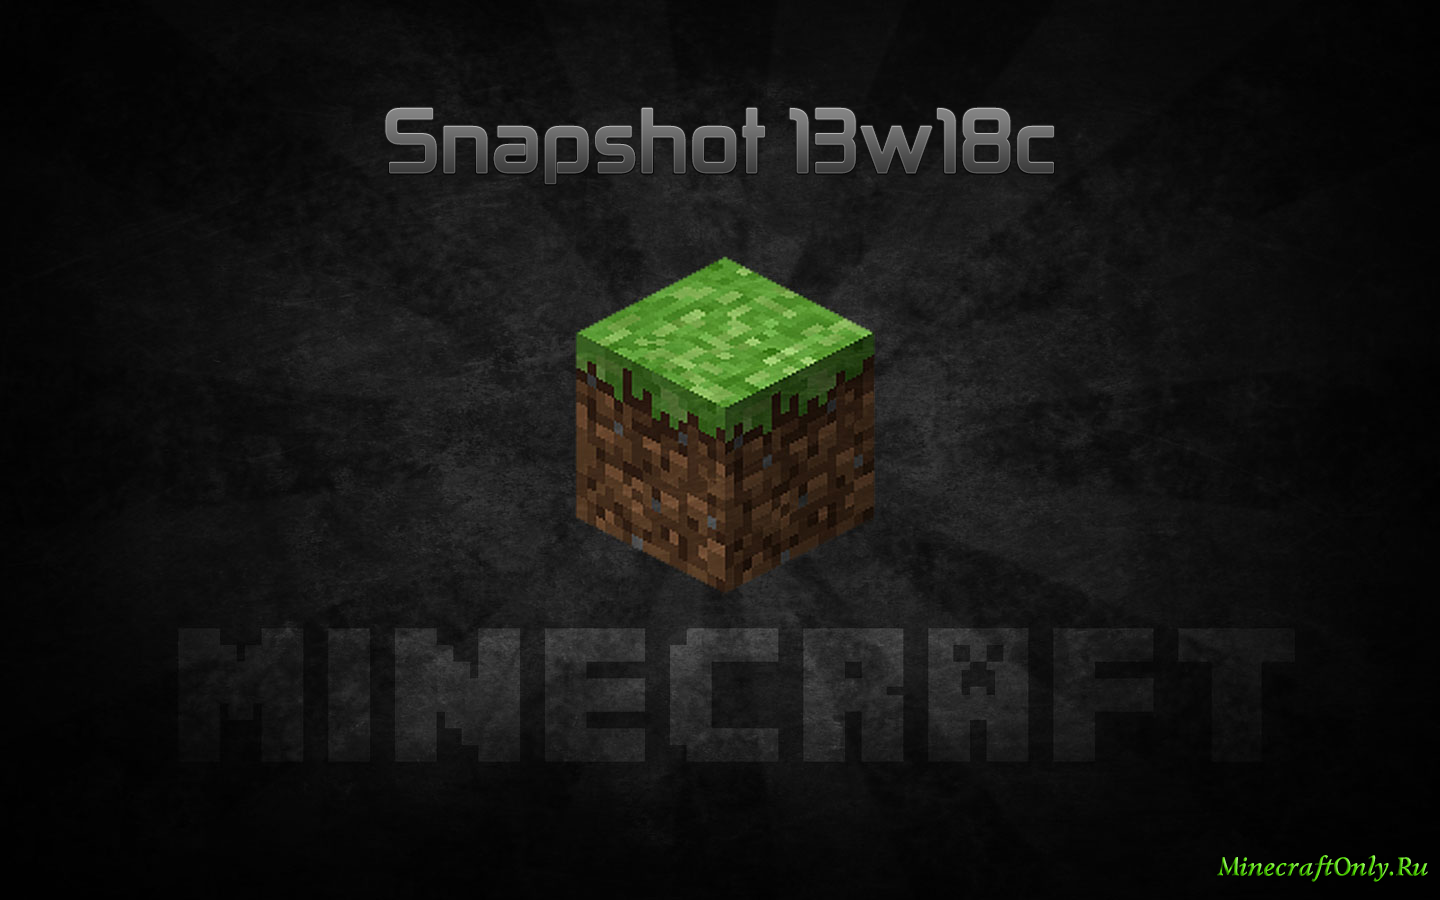 Minecraft Snapshot 13w18c